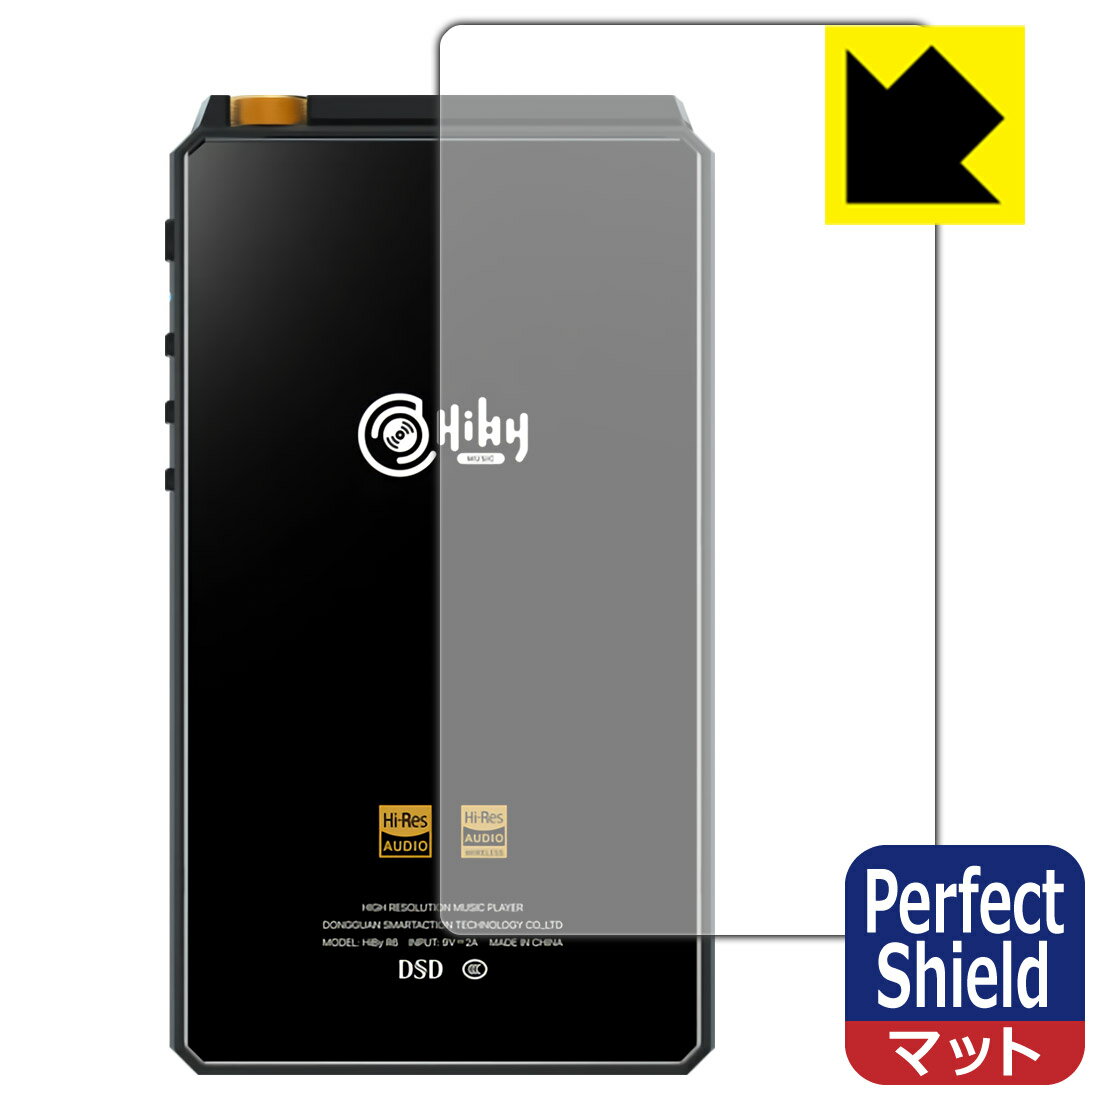 ●対応機種 : HiBy Music New HiBy R6 (2021年モデル)　　※2021年発売の「New HiBy R6」用の保護フィルムです。●製品内容 : 背面用1枚●※この機器は周辺部が曲面となったラウンド仕様のため、保護フィルムを端まで貼ることができません。●「Perfect Shield」は画面の反射を抑え、指のすべりもなめらかな指紋や皮脂汚れがつきにくい『アンチグレアタイプ(非光沢)の保護フィルム』●安心の国産素材を使用。日本国内の自社工場で製造し出荷しています。【ポスト投函送料無料】商品は【ポスト投函発送 (追跡可能メール便)】で発送します。お急ぎ、配達日時を指定されたい方は以下のクーポンを同時購入ください。【お急ぎ便クーポン】　プラス110円(税込)で速達扱いでの発送。お届けはポストへの投函となります。【配達日時指定クーポン】　プラス550円(税込)で配達日時を指定し、宅配便で発送させていただきます。【お急ぎ便クーポン】はこちらをクリック【配達日時指定クーポン】はこちらをクリック 　 表面に微細な凹凸を作ることにより、外光を乱反射させギラツキを抑える「アンチグレア加工」がされております。 屋外での太陽光の映り込み、屋内でも蛍光灯などの映り込みが気になるシーンが多い方におすすめです。 また、指紋がついた場合でも目立ちにくいという特長があります。 指滑りはさらさらな使用感でストレスのない操作・入力が可能です。 ハードコート加工がされており、キズや擦れに強くなっています。簡単にキズがつかず長くご利用いただけます。 反射防止のアンチグレア加工で指紋が目立ちにくい上、表面は防汚コーティングがされており、皮脂や汚れがつきにくく、また、落ちやすくなっています。 接着面は気泡の入りにくい特殊な自己吸着タイプです。素材に柔軟性があり、貼り付け作業も簡単にできます。また、はがすときにガラス製フィルムのように割れてしまうことはありません。 貼り直しが何度でもできるので、正しい位置へ貼り付けられるまでやり直すことができます。 最高級グレードの国産素材を日本国内の弊社工場で加工している完全な Made in Japan です。安心の品質をお届けします。 使用上の注意 ●本製品は機器の画面をキズなどから保護するフィルムです。他の目的にはご使用にならないでください。 ●本製品は液晶保護および機器本体を完全に保護することを保証するものではありません。機器の破損、損傷、故障、その他損害につきましては一切の責任を負いかねます。 ●製品の性質上、画面操作の反応が変化したり、表示等が変化して見える場合がございます。 ●貼り付け作業時の失敗(位置ズレ、汚れ、ゆがみ、折れ、気泡など)および取り外し作業時の破損、損傷などについては、一切の責任を負いかねます。 ●水に濡れた状態でのご使用は吸着力の低下などにより、保護フィルムがはがれてしまう場合がございます。防水対応の機器でご使用の場合はご注意ください。 ●アルコール類やその他薬剤を本製品に付着させないでください。表面のコーティングや吸着面が変質するおそれがあります。 ●品質向上のため、仕様などを予告なく変更する場合がございますので、予めご了承ください。